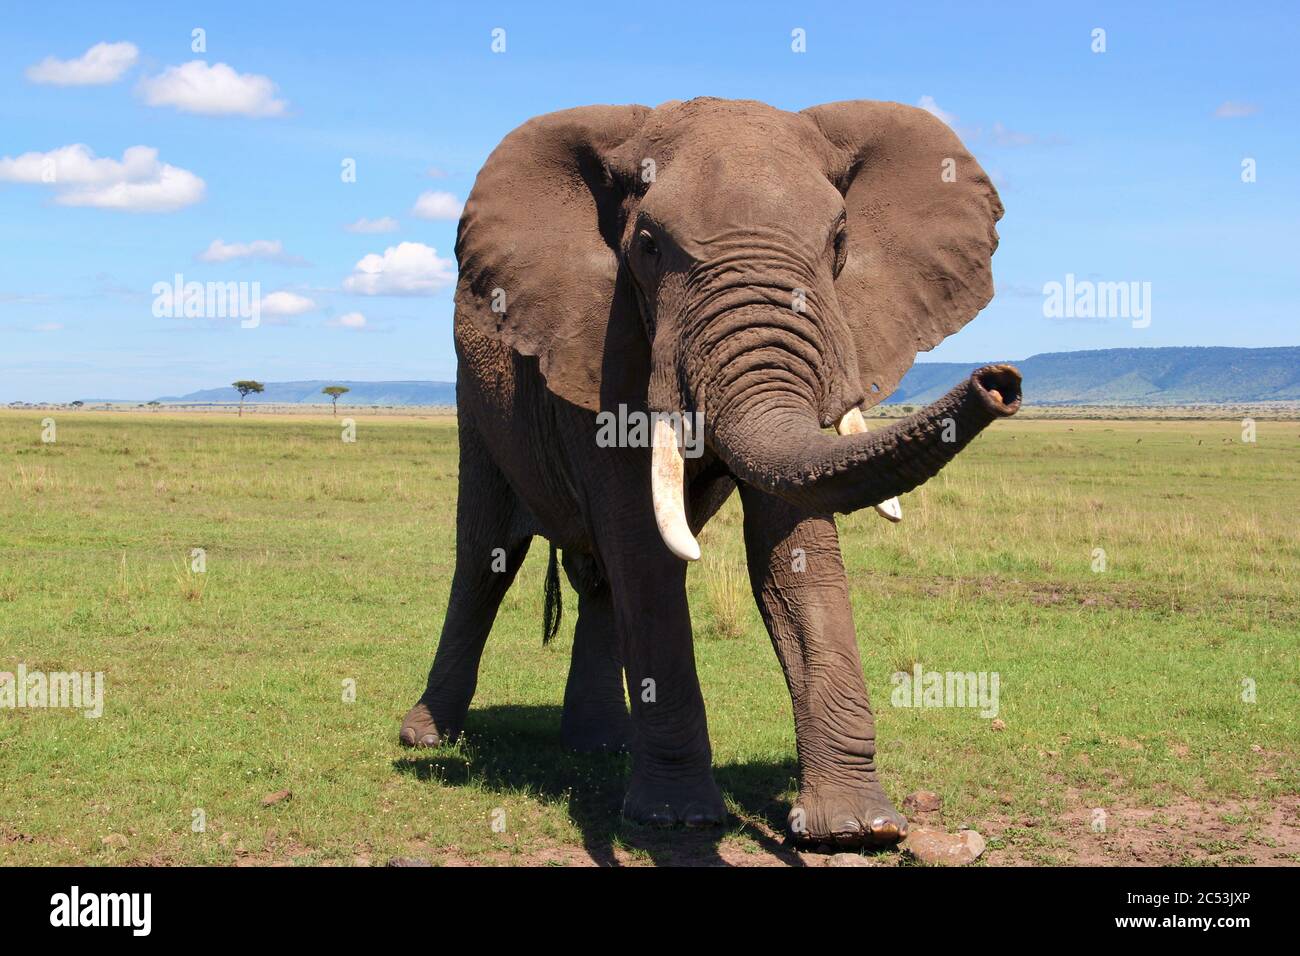 Un vieux taureau d'éléphants avec de grandes défenses se déplace majestueusement au soleil sur la petite herbe de la savane kenyane, dans le ciel bleu de fond Banque D'Images